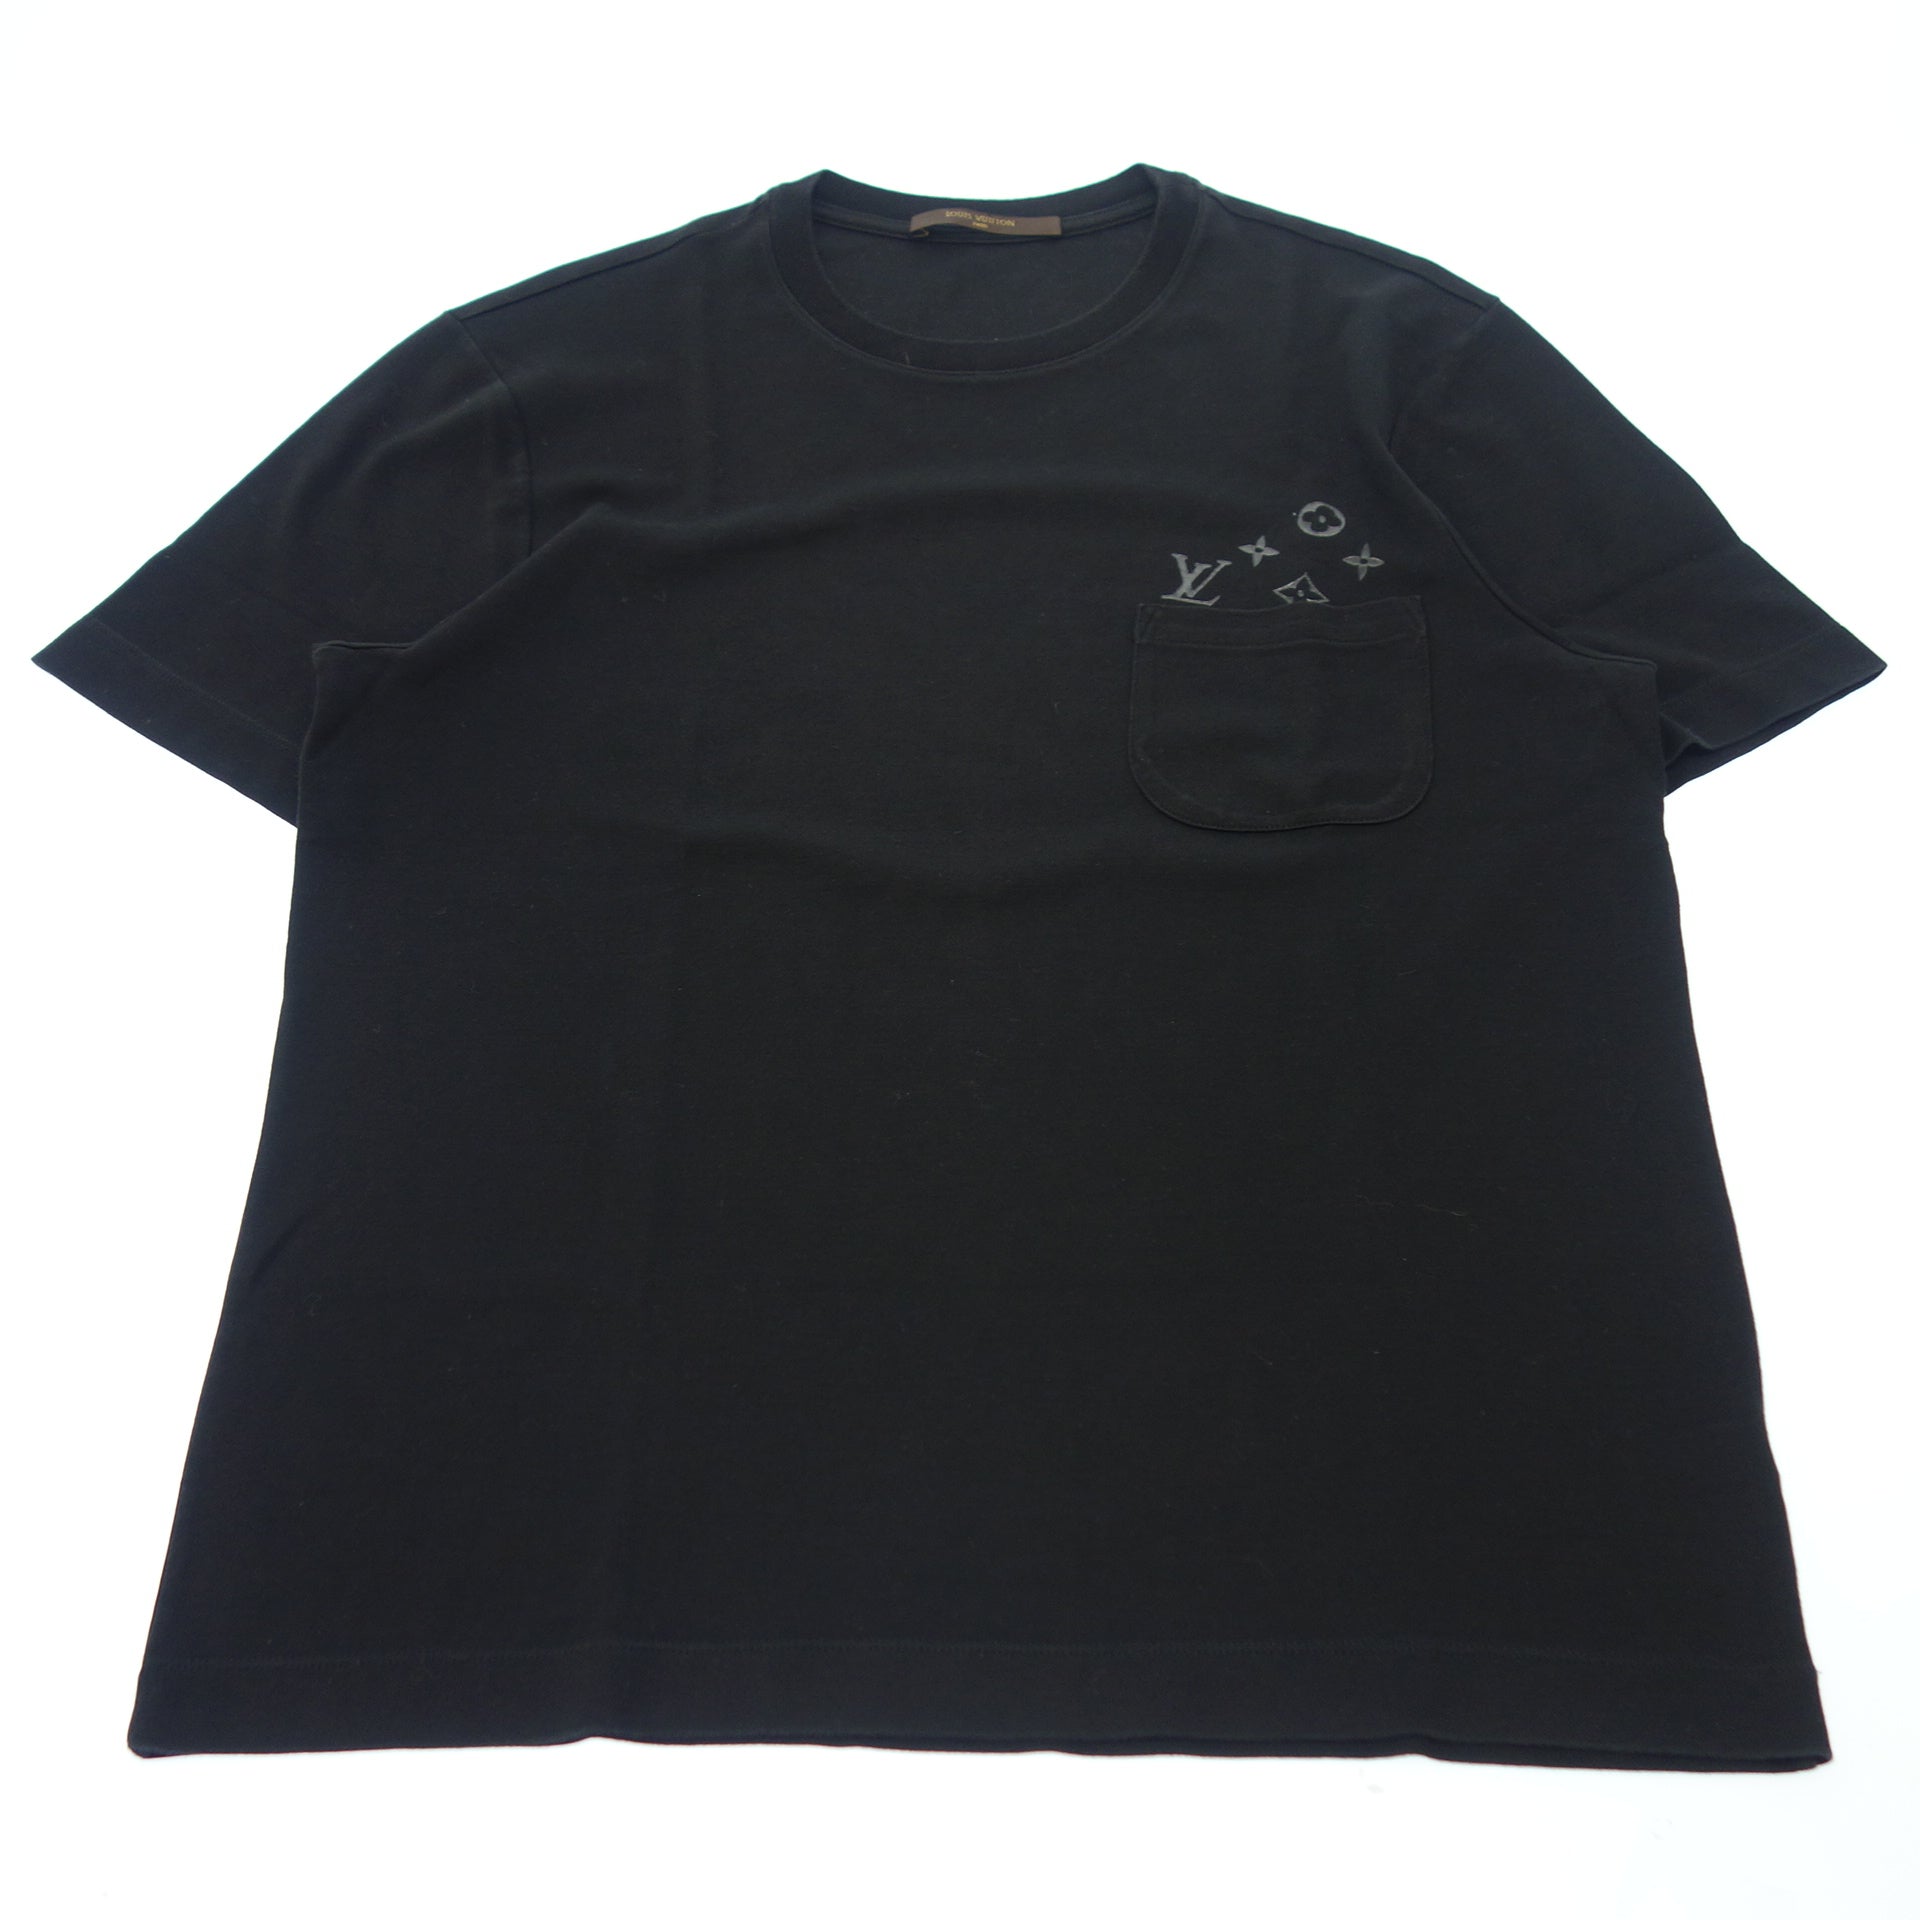 ルイヴィトン　Tシャツ　メンズ　louis vuitton ブランド　黒ブラックネックVネック